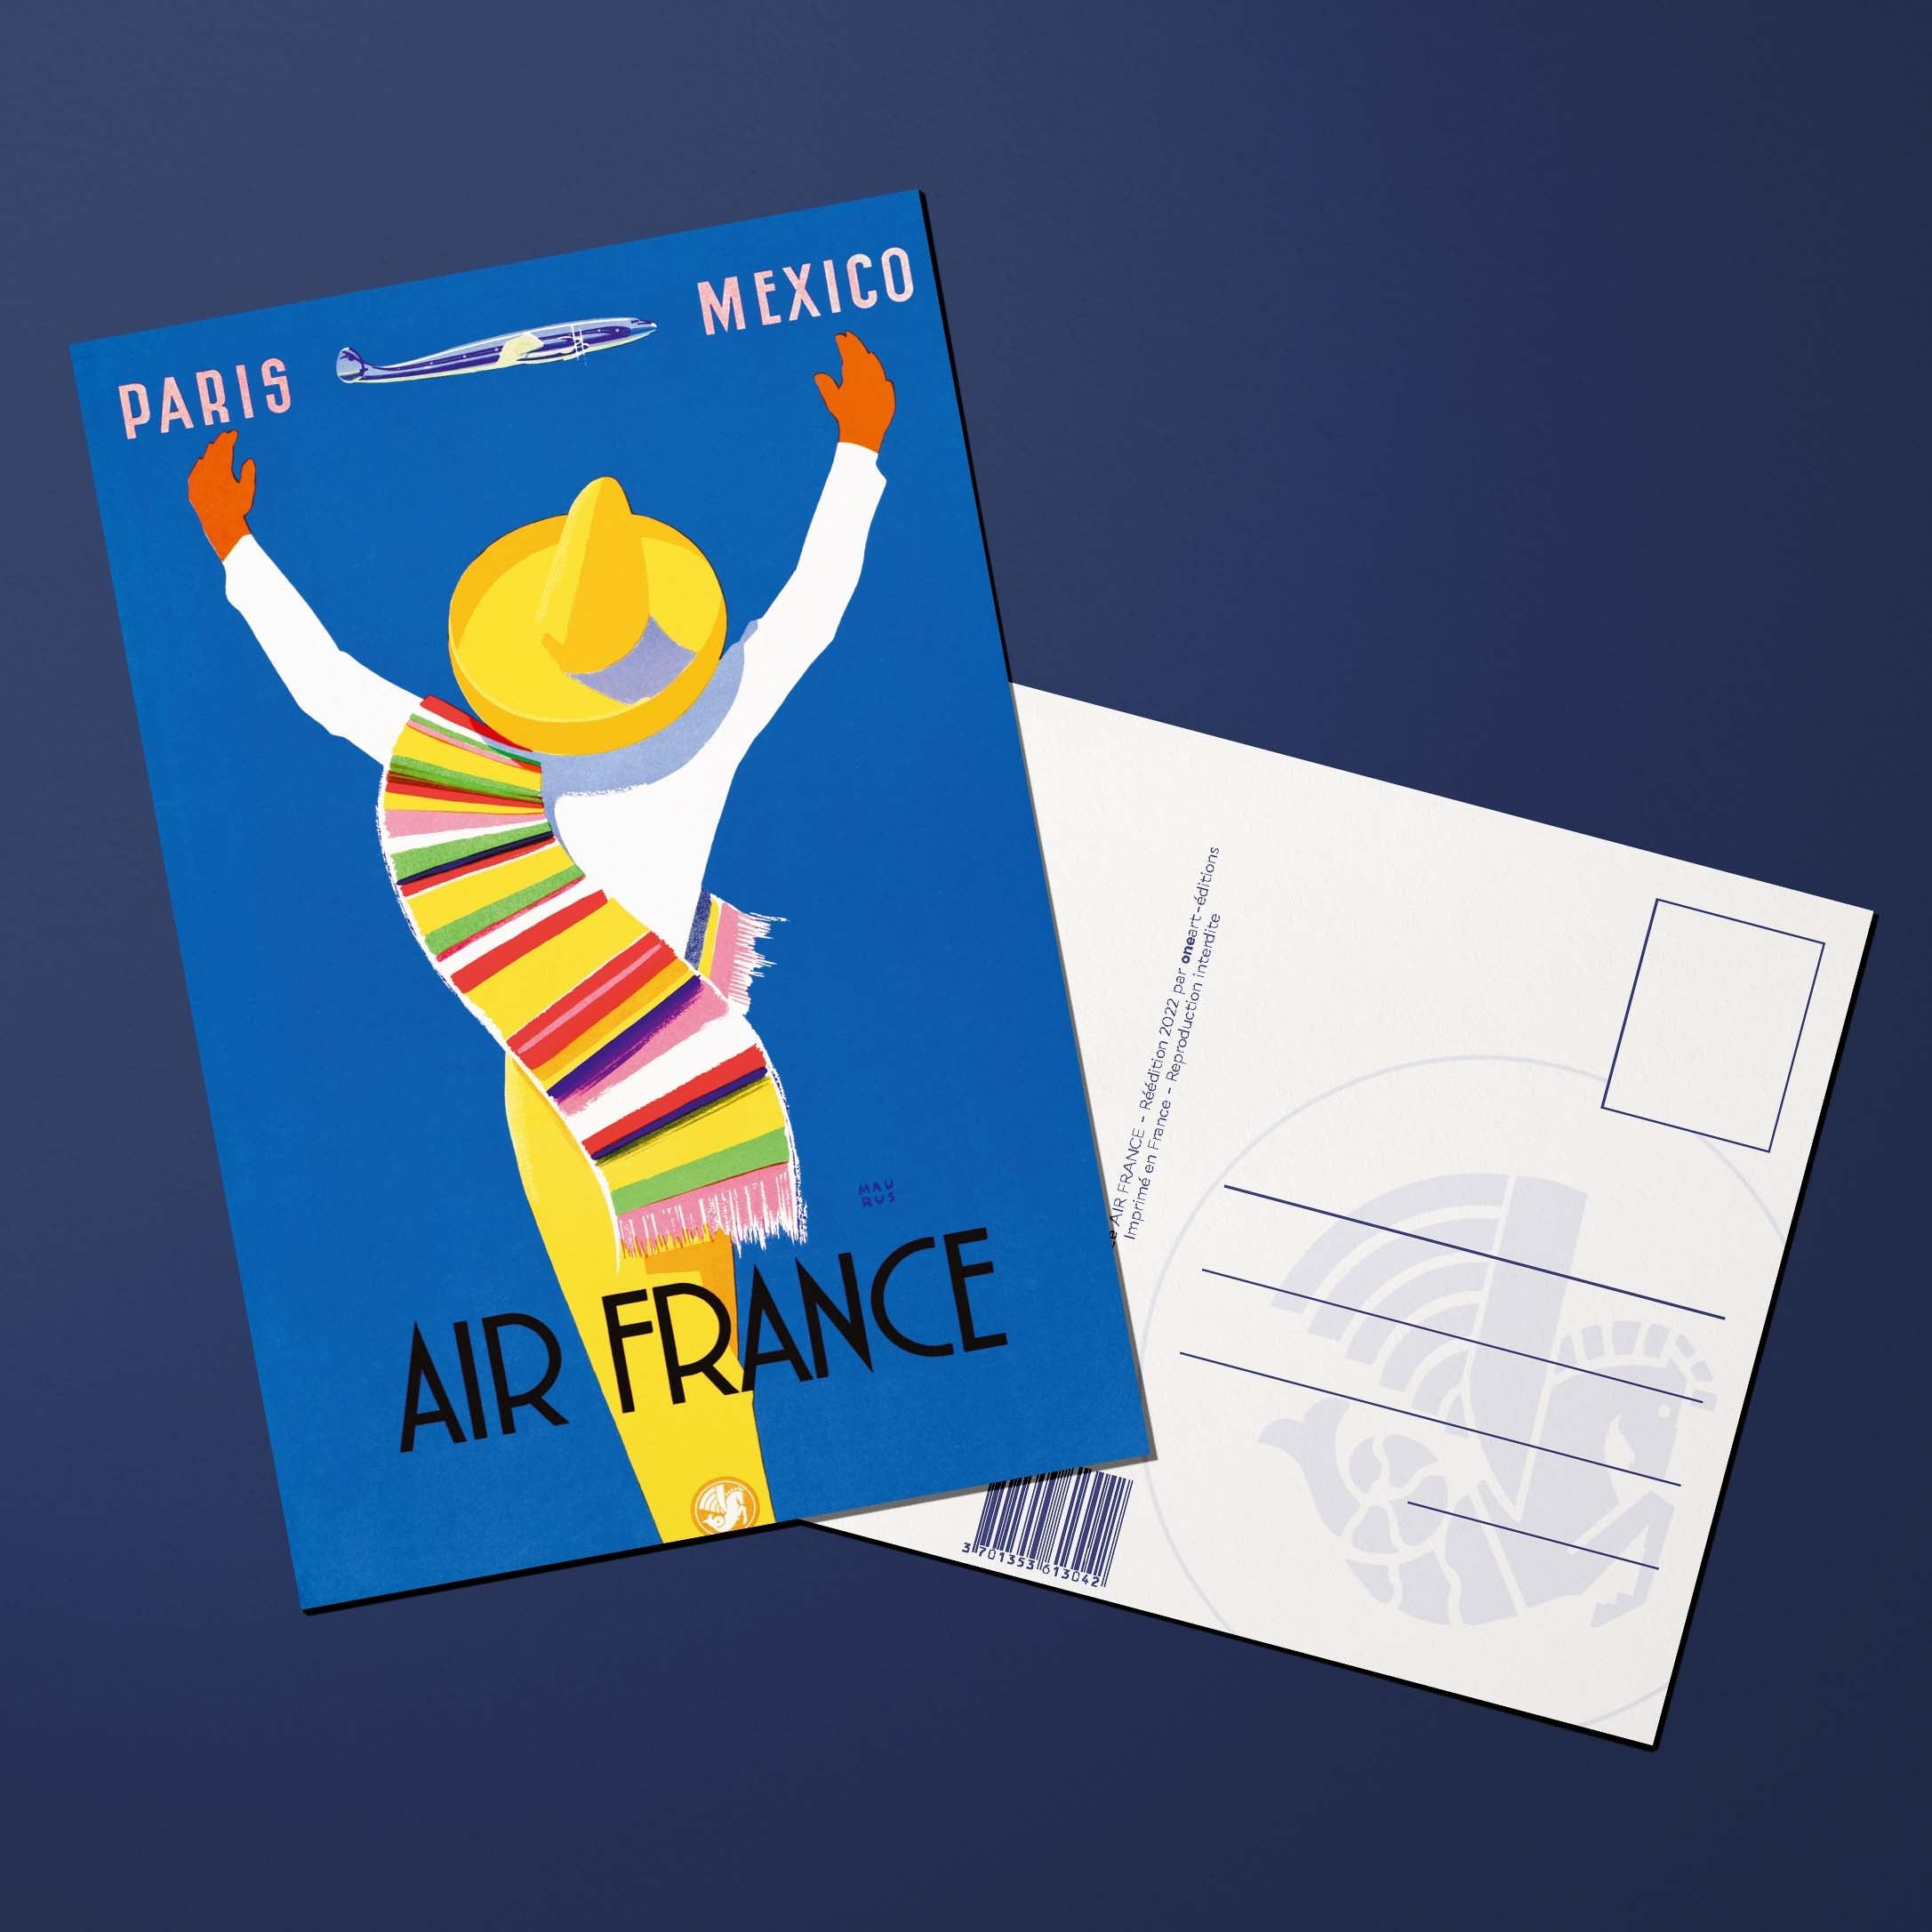 Air France Legend Paris Mexico postcard, poncho